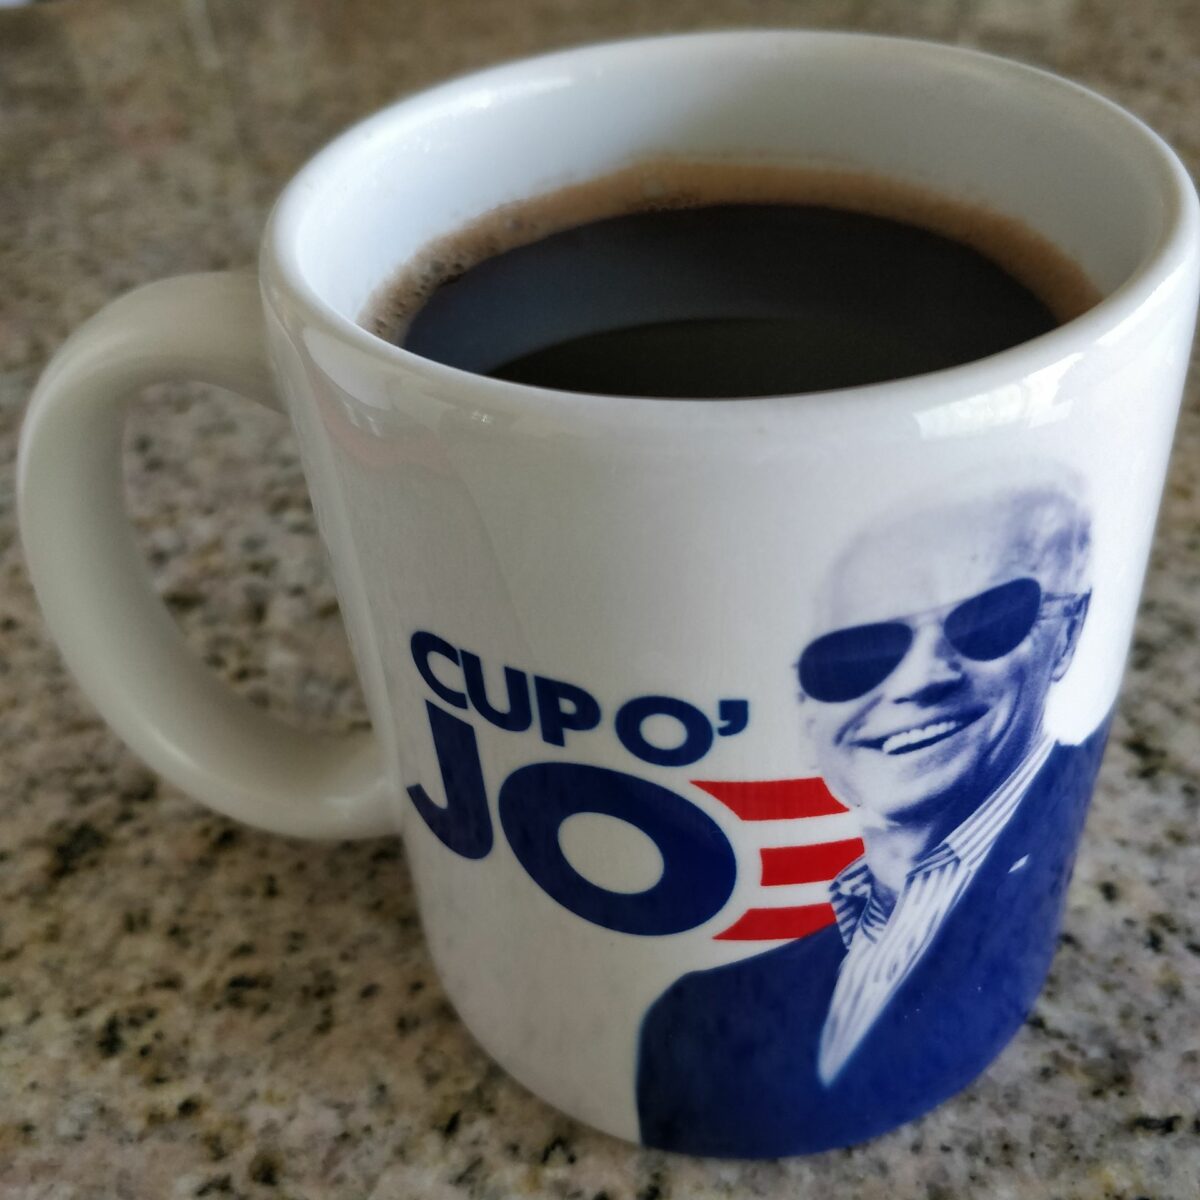 Cup O’ Joe